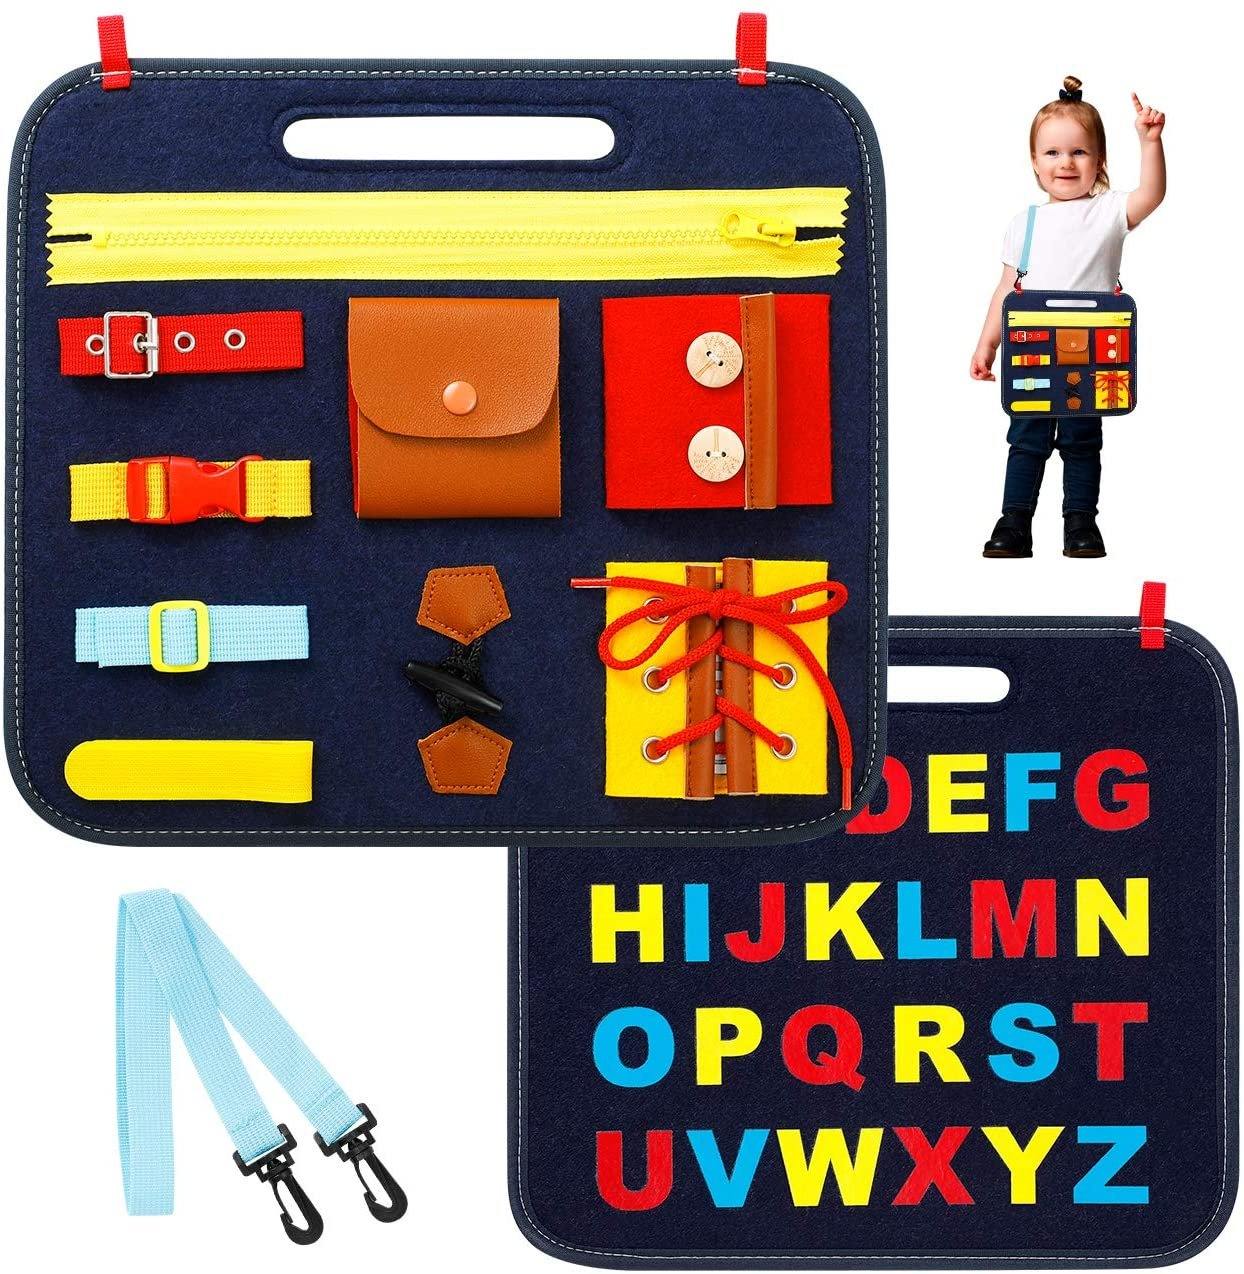 Kolor Tablica Edukacyjna Zabawka Dla Dzieci Pakiet - Pellelife